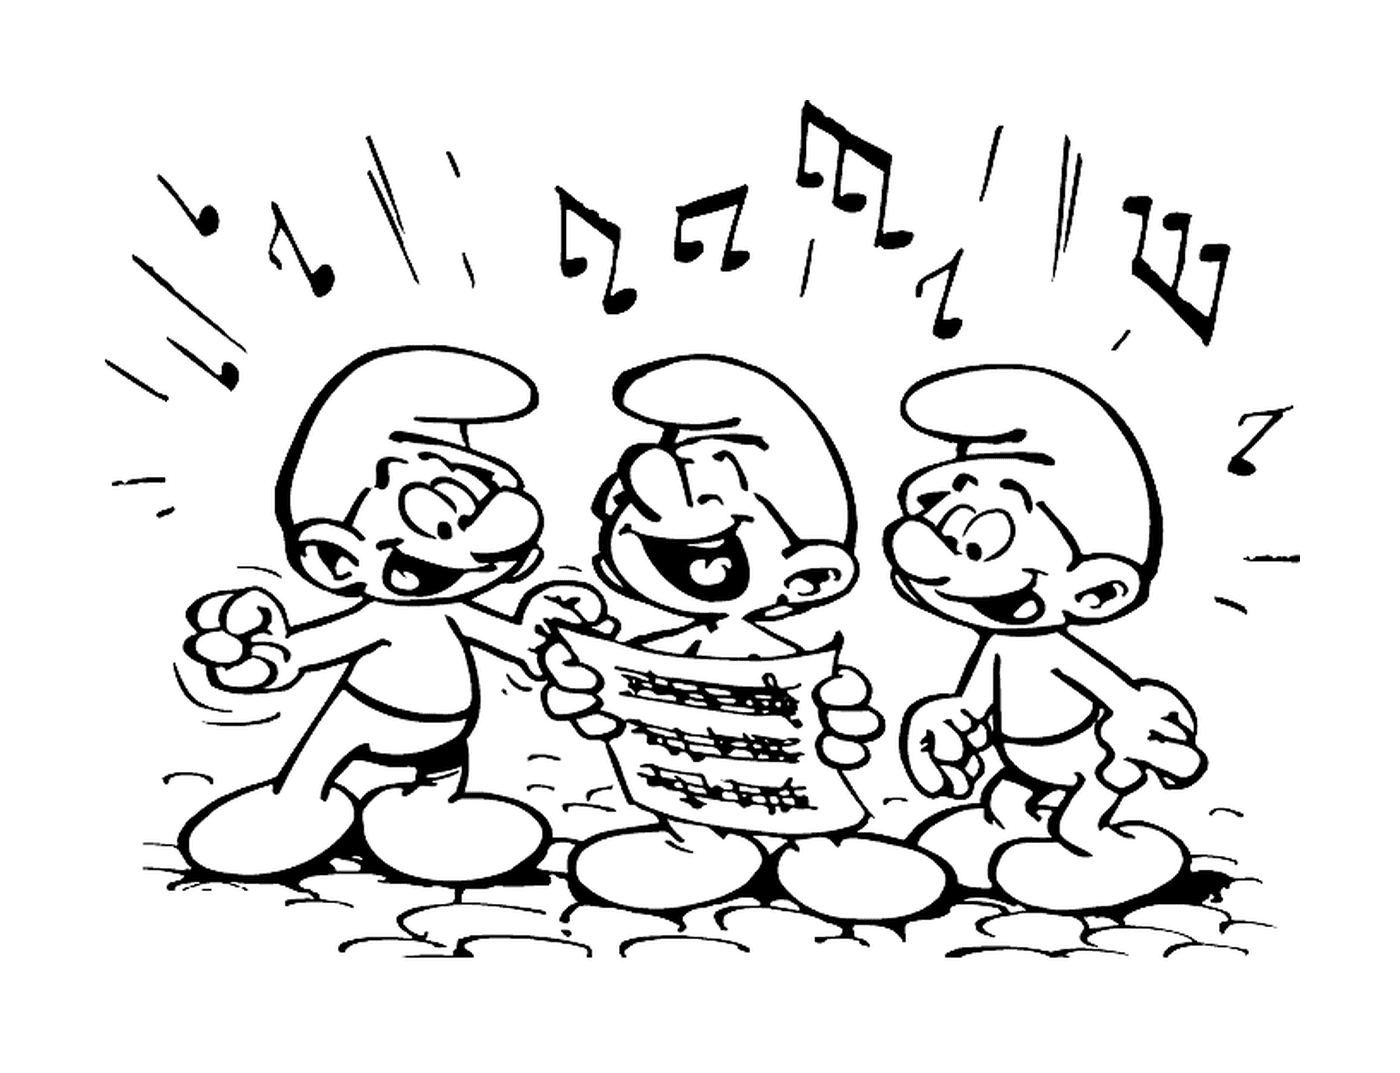  Three smurfs sing harmoniously 